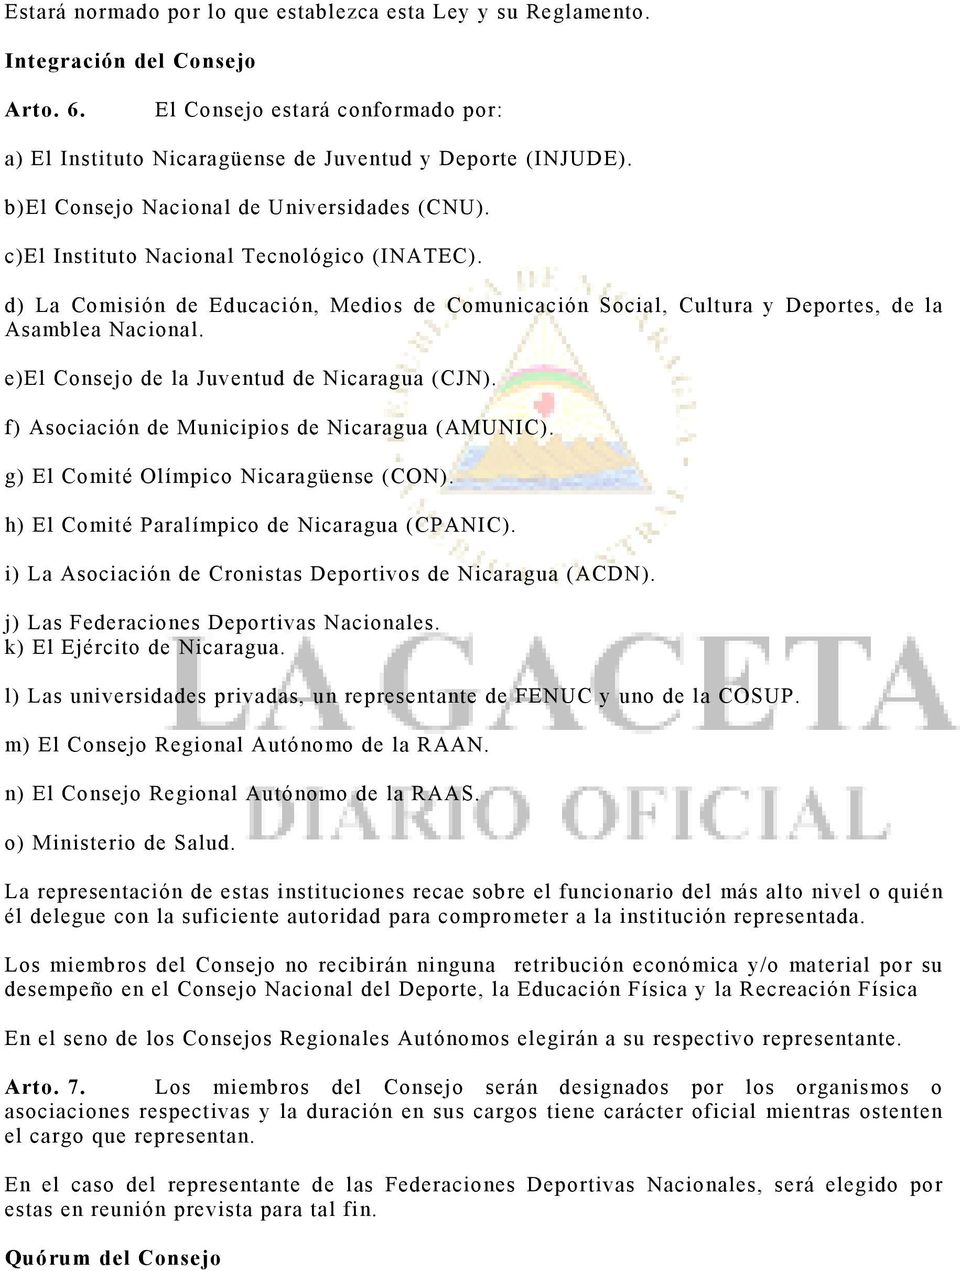 e)el Consejo de la Juventud de Nicaragua (CJN). f) Asociación de Municipios de Nicaragua (AMUNIC). g) El Comité Olímpico Nicaragüense (CON). h) El Comité Paralímpico de Nicaragua (CPANIC).